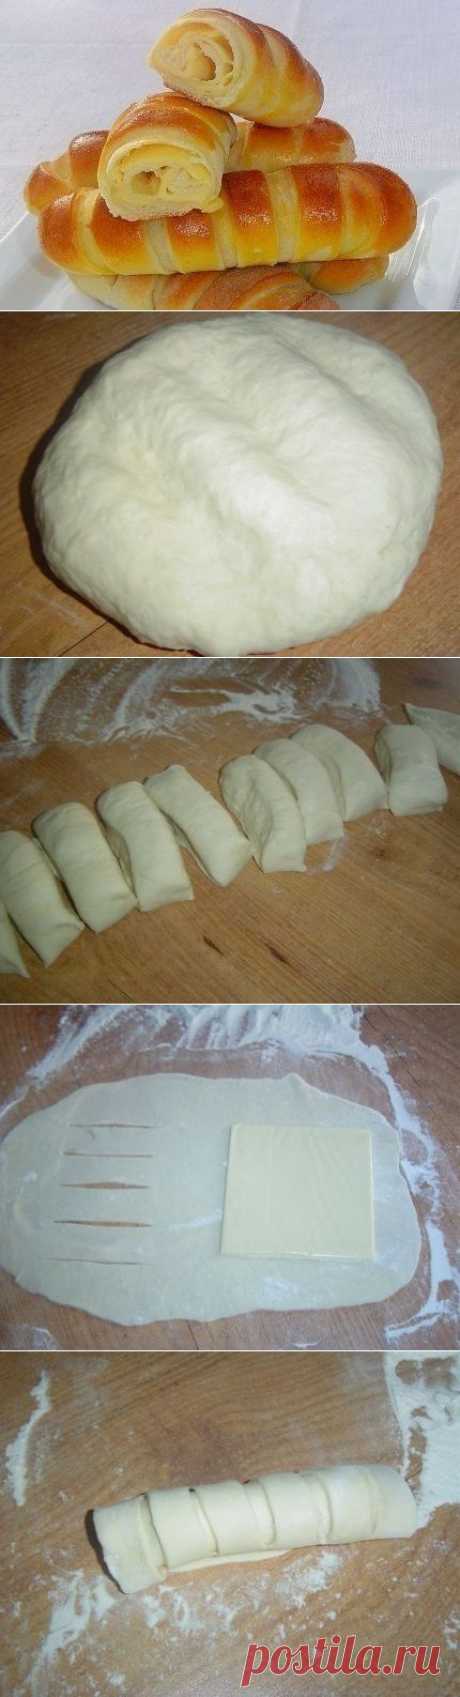 Как приготовить булочки с сыром - рецепт, ингридиенты и фотографии